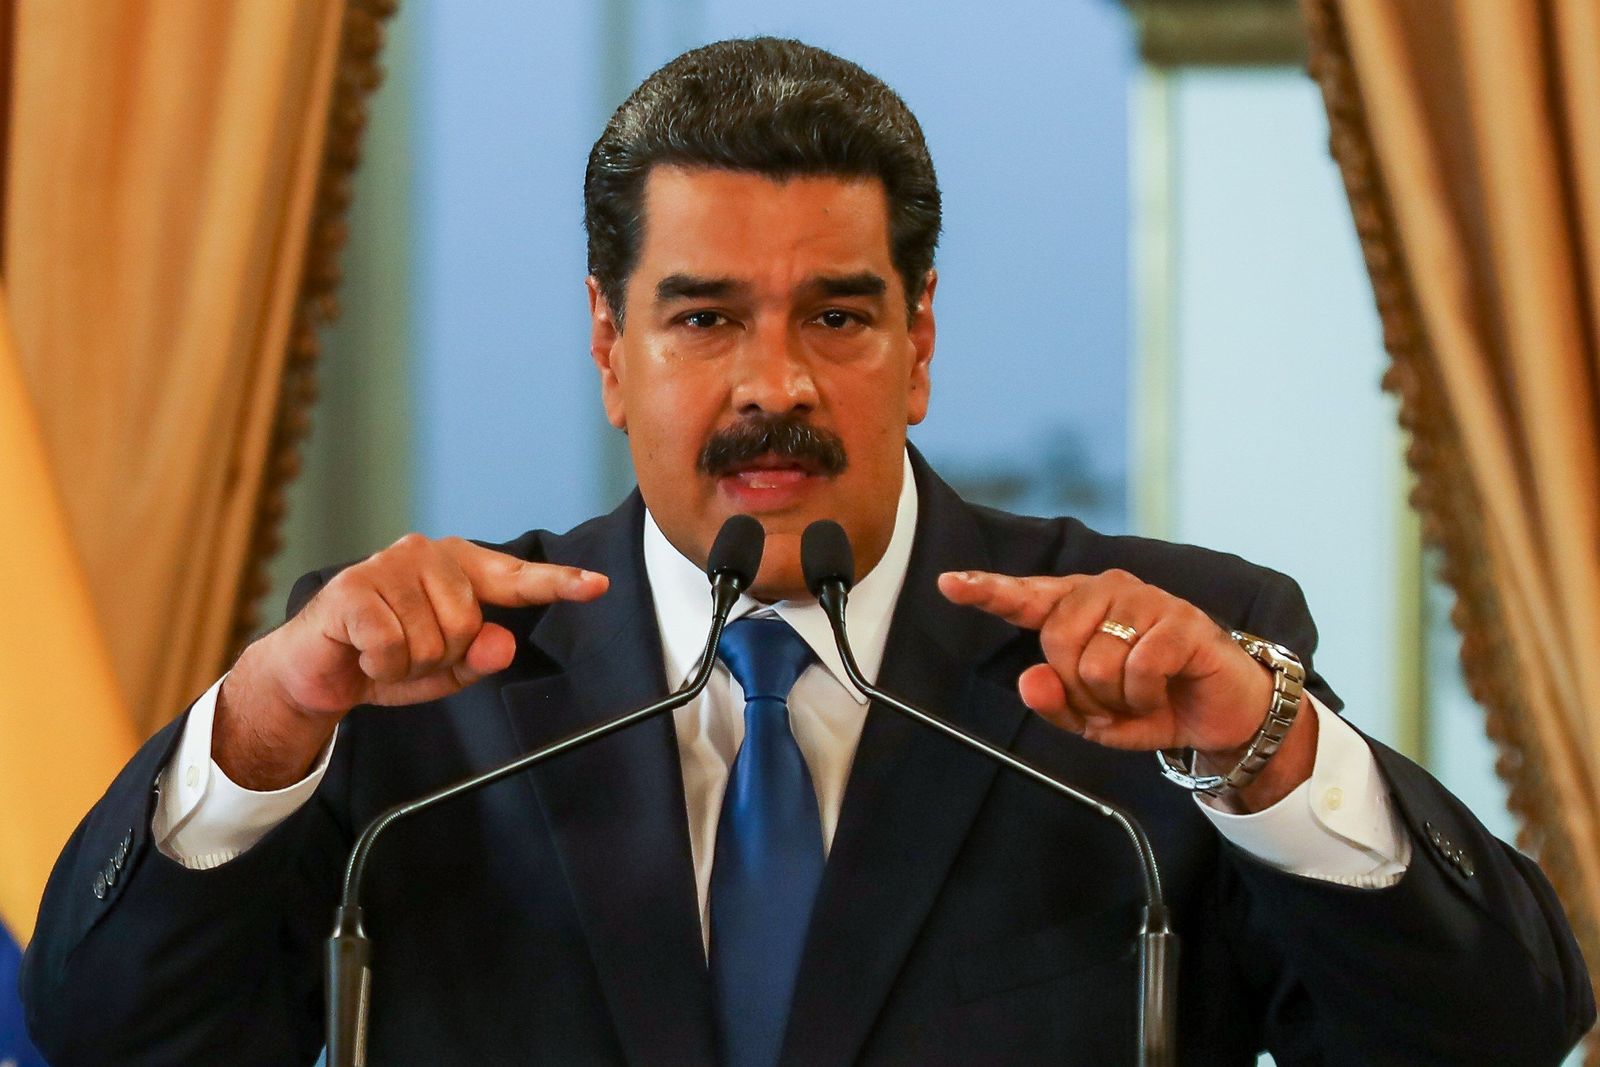 Soberanía. Nicolás Maduro desmiente que exista crisis humanitaria en Venezuela.